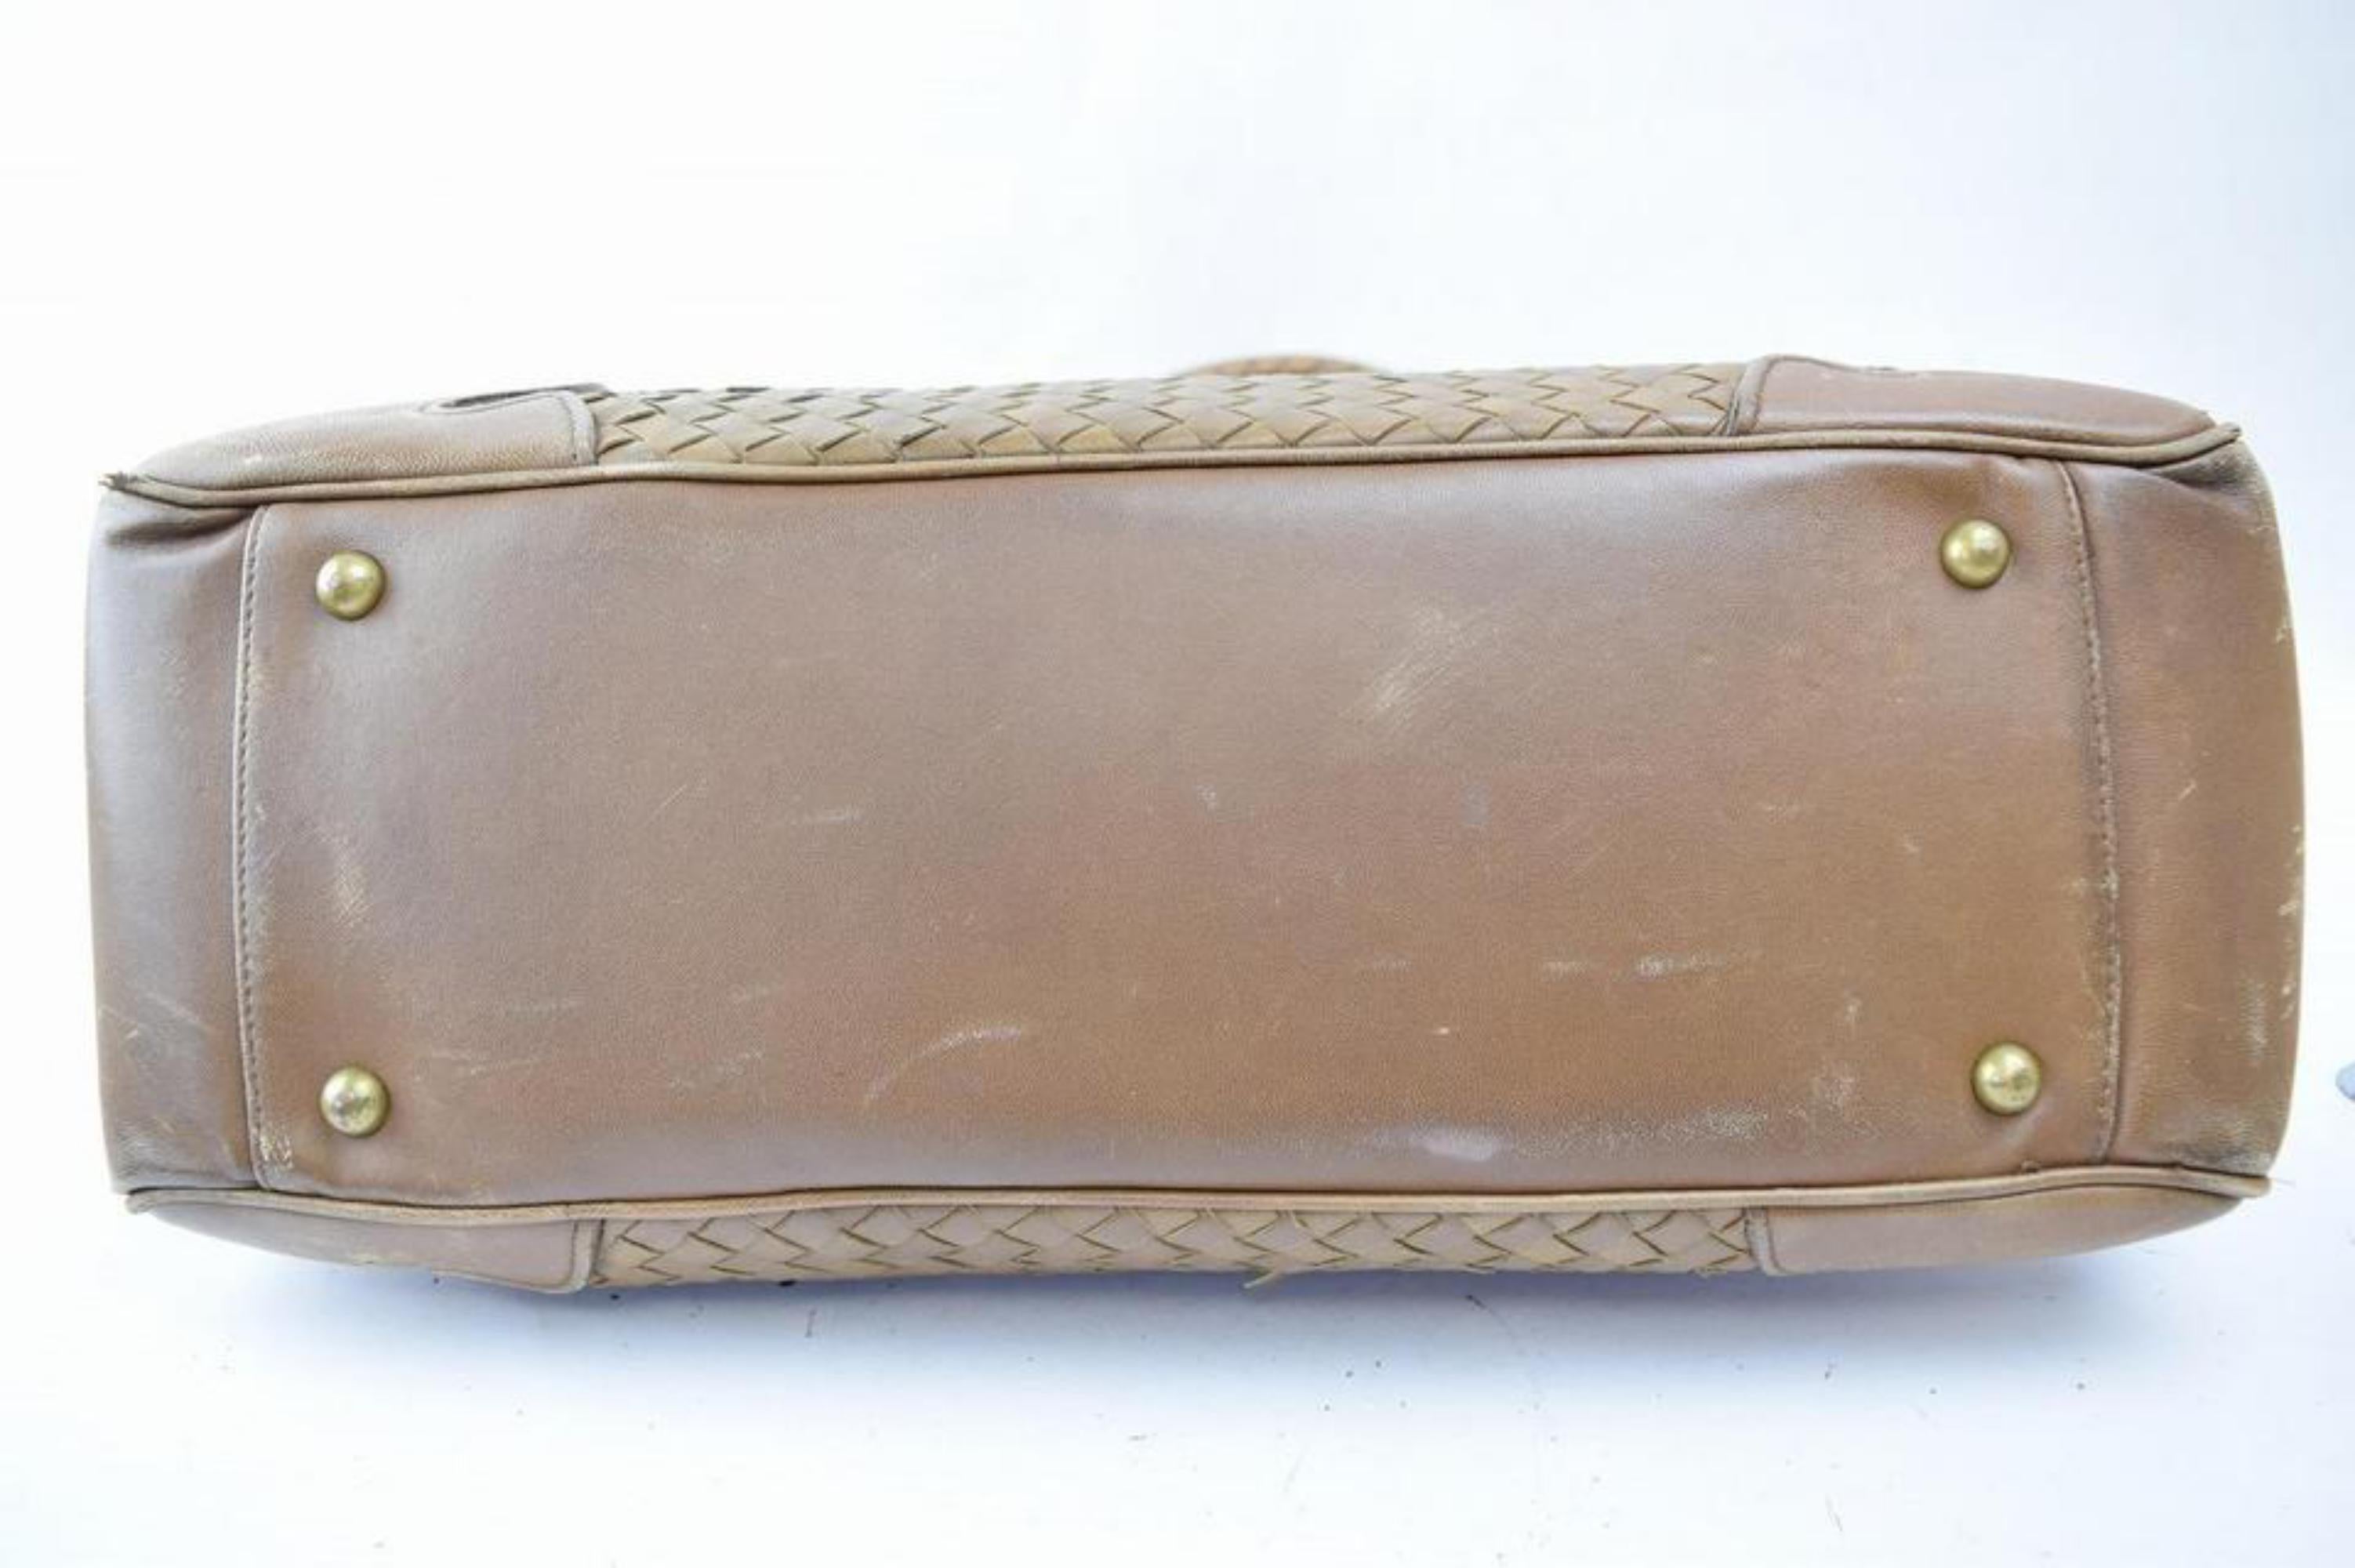 Bottega Veneta Intrecciato Woven Tote 865639 Brown Patent Leather Shoulder Bag For Sale 4